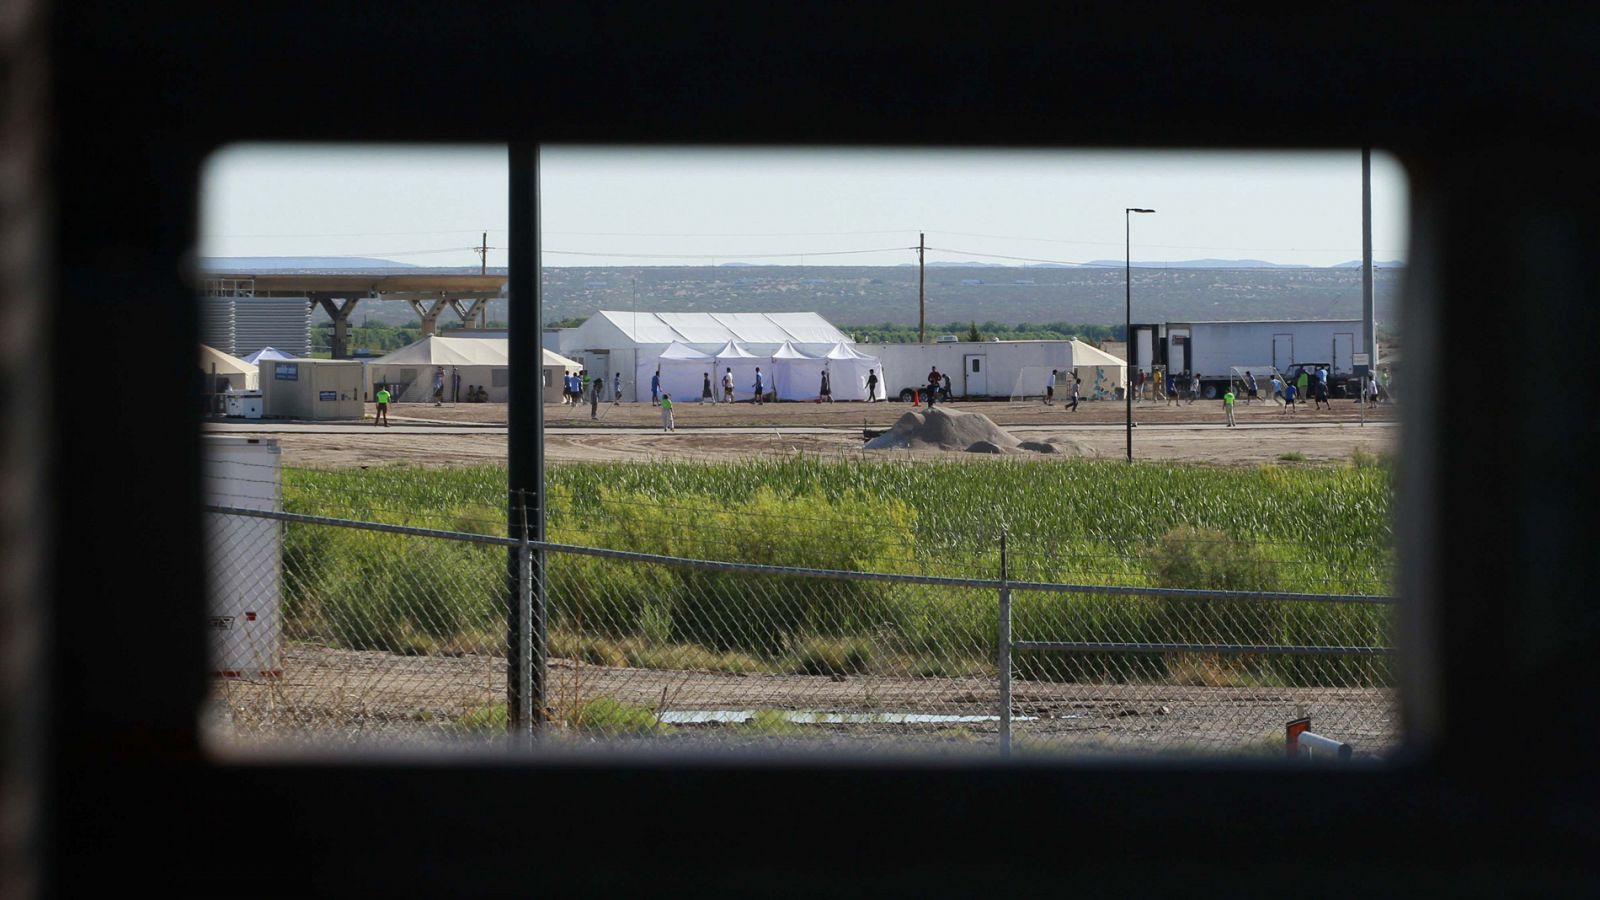 Hijo de migrantes detenidos juegan al fútbol en un campamento cerca de Tomillo, Texas, EE.UU.